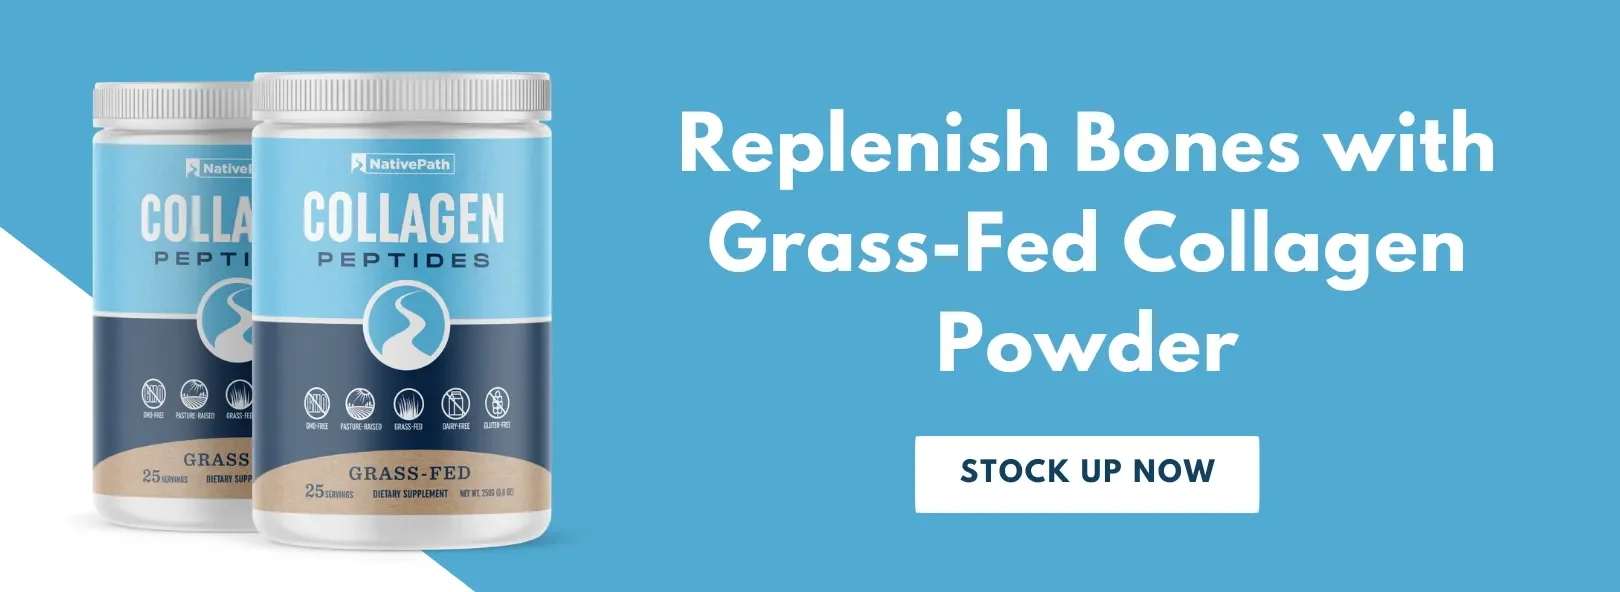 Replenish Bones with NativePath Grass-Fed Collagen Powder